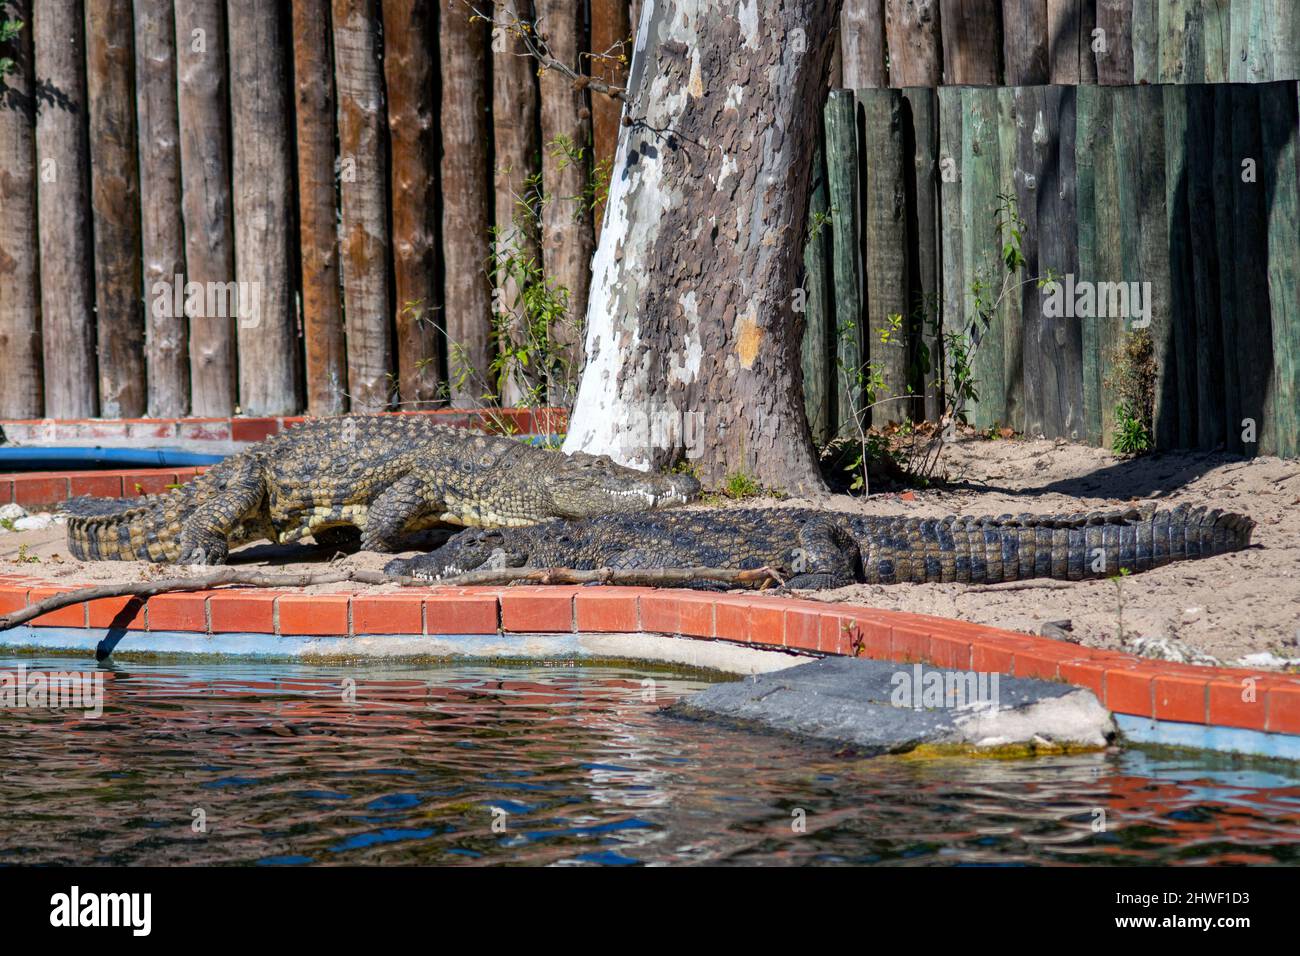 Dos cocodrilos grandes. El cocodrilo del Nilo es un gran cocodrilo nativo de hábitats de agua dulce en África. Zoológico de Lisboa. Foto de stock